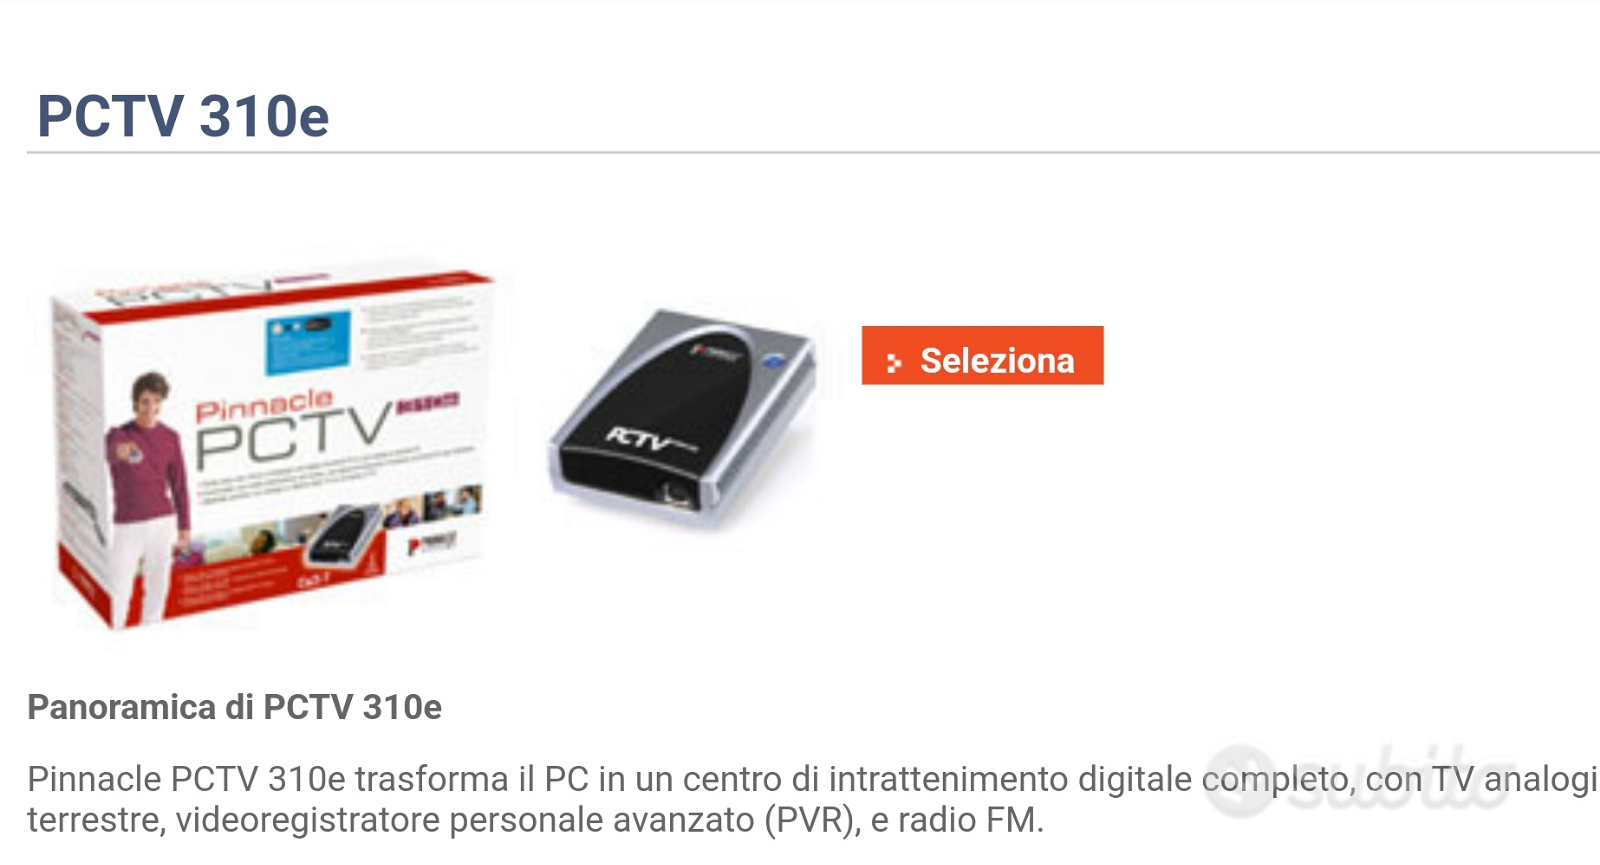 Sintonizzatore- registratore programmi TV sul PC - Audio/Video In vendita a  Bergamo